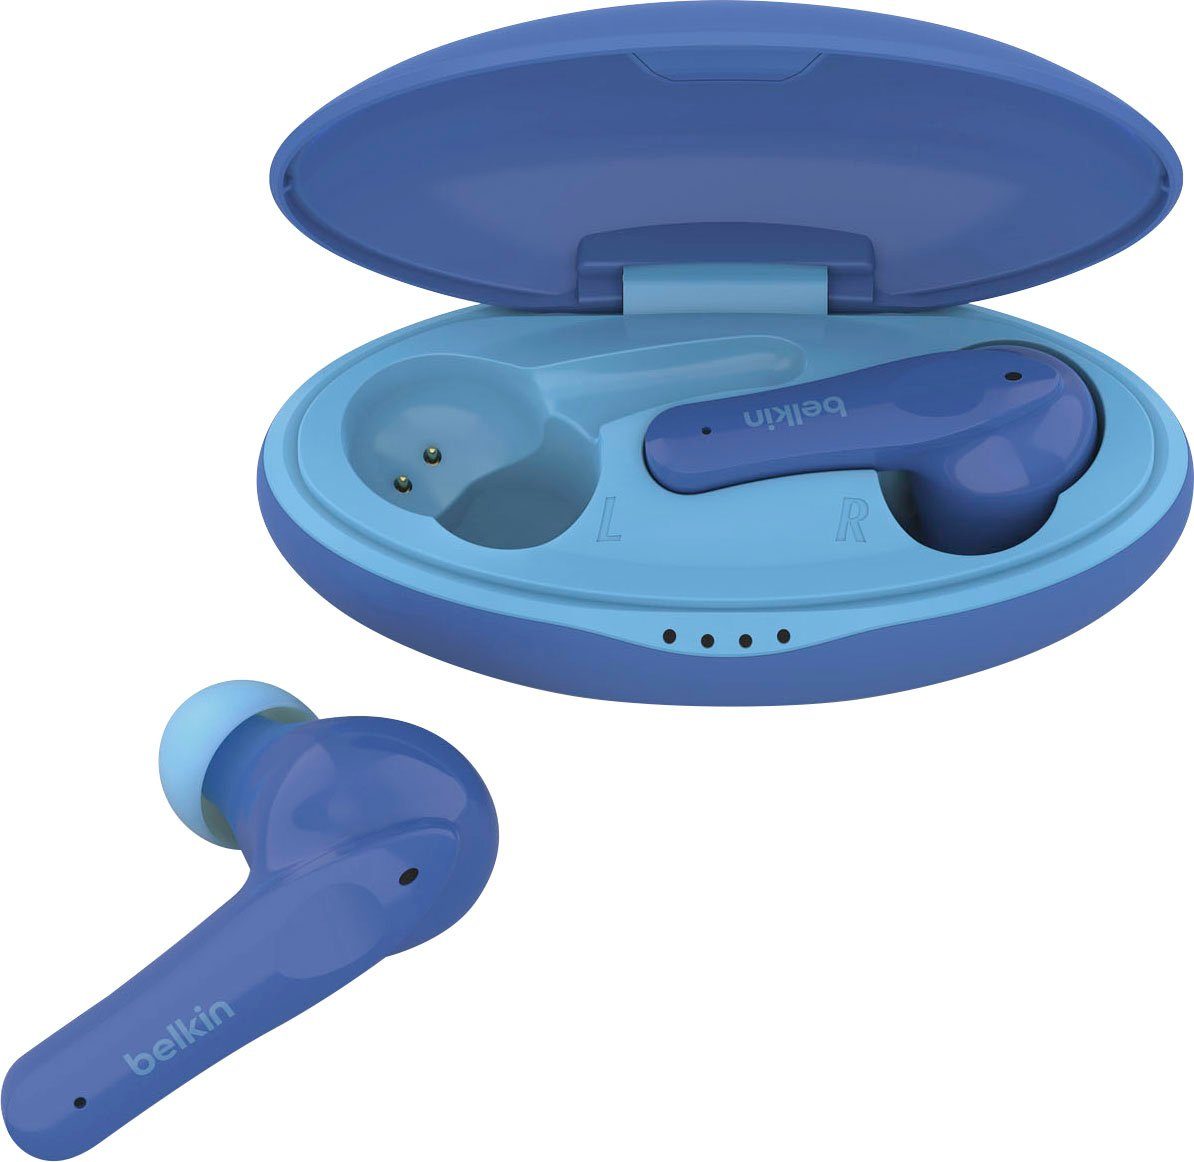 Ganz neu AUS! Belkin SOUNDFORM blau wireless - Kopfhörer) (auf In-Ear-Kopfhörer Kinder 85 dB begrenzt; am Kopfhörer NANO